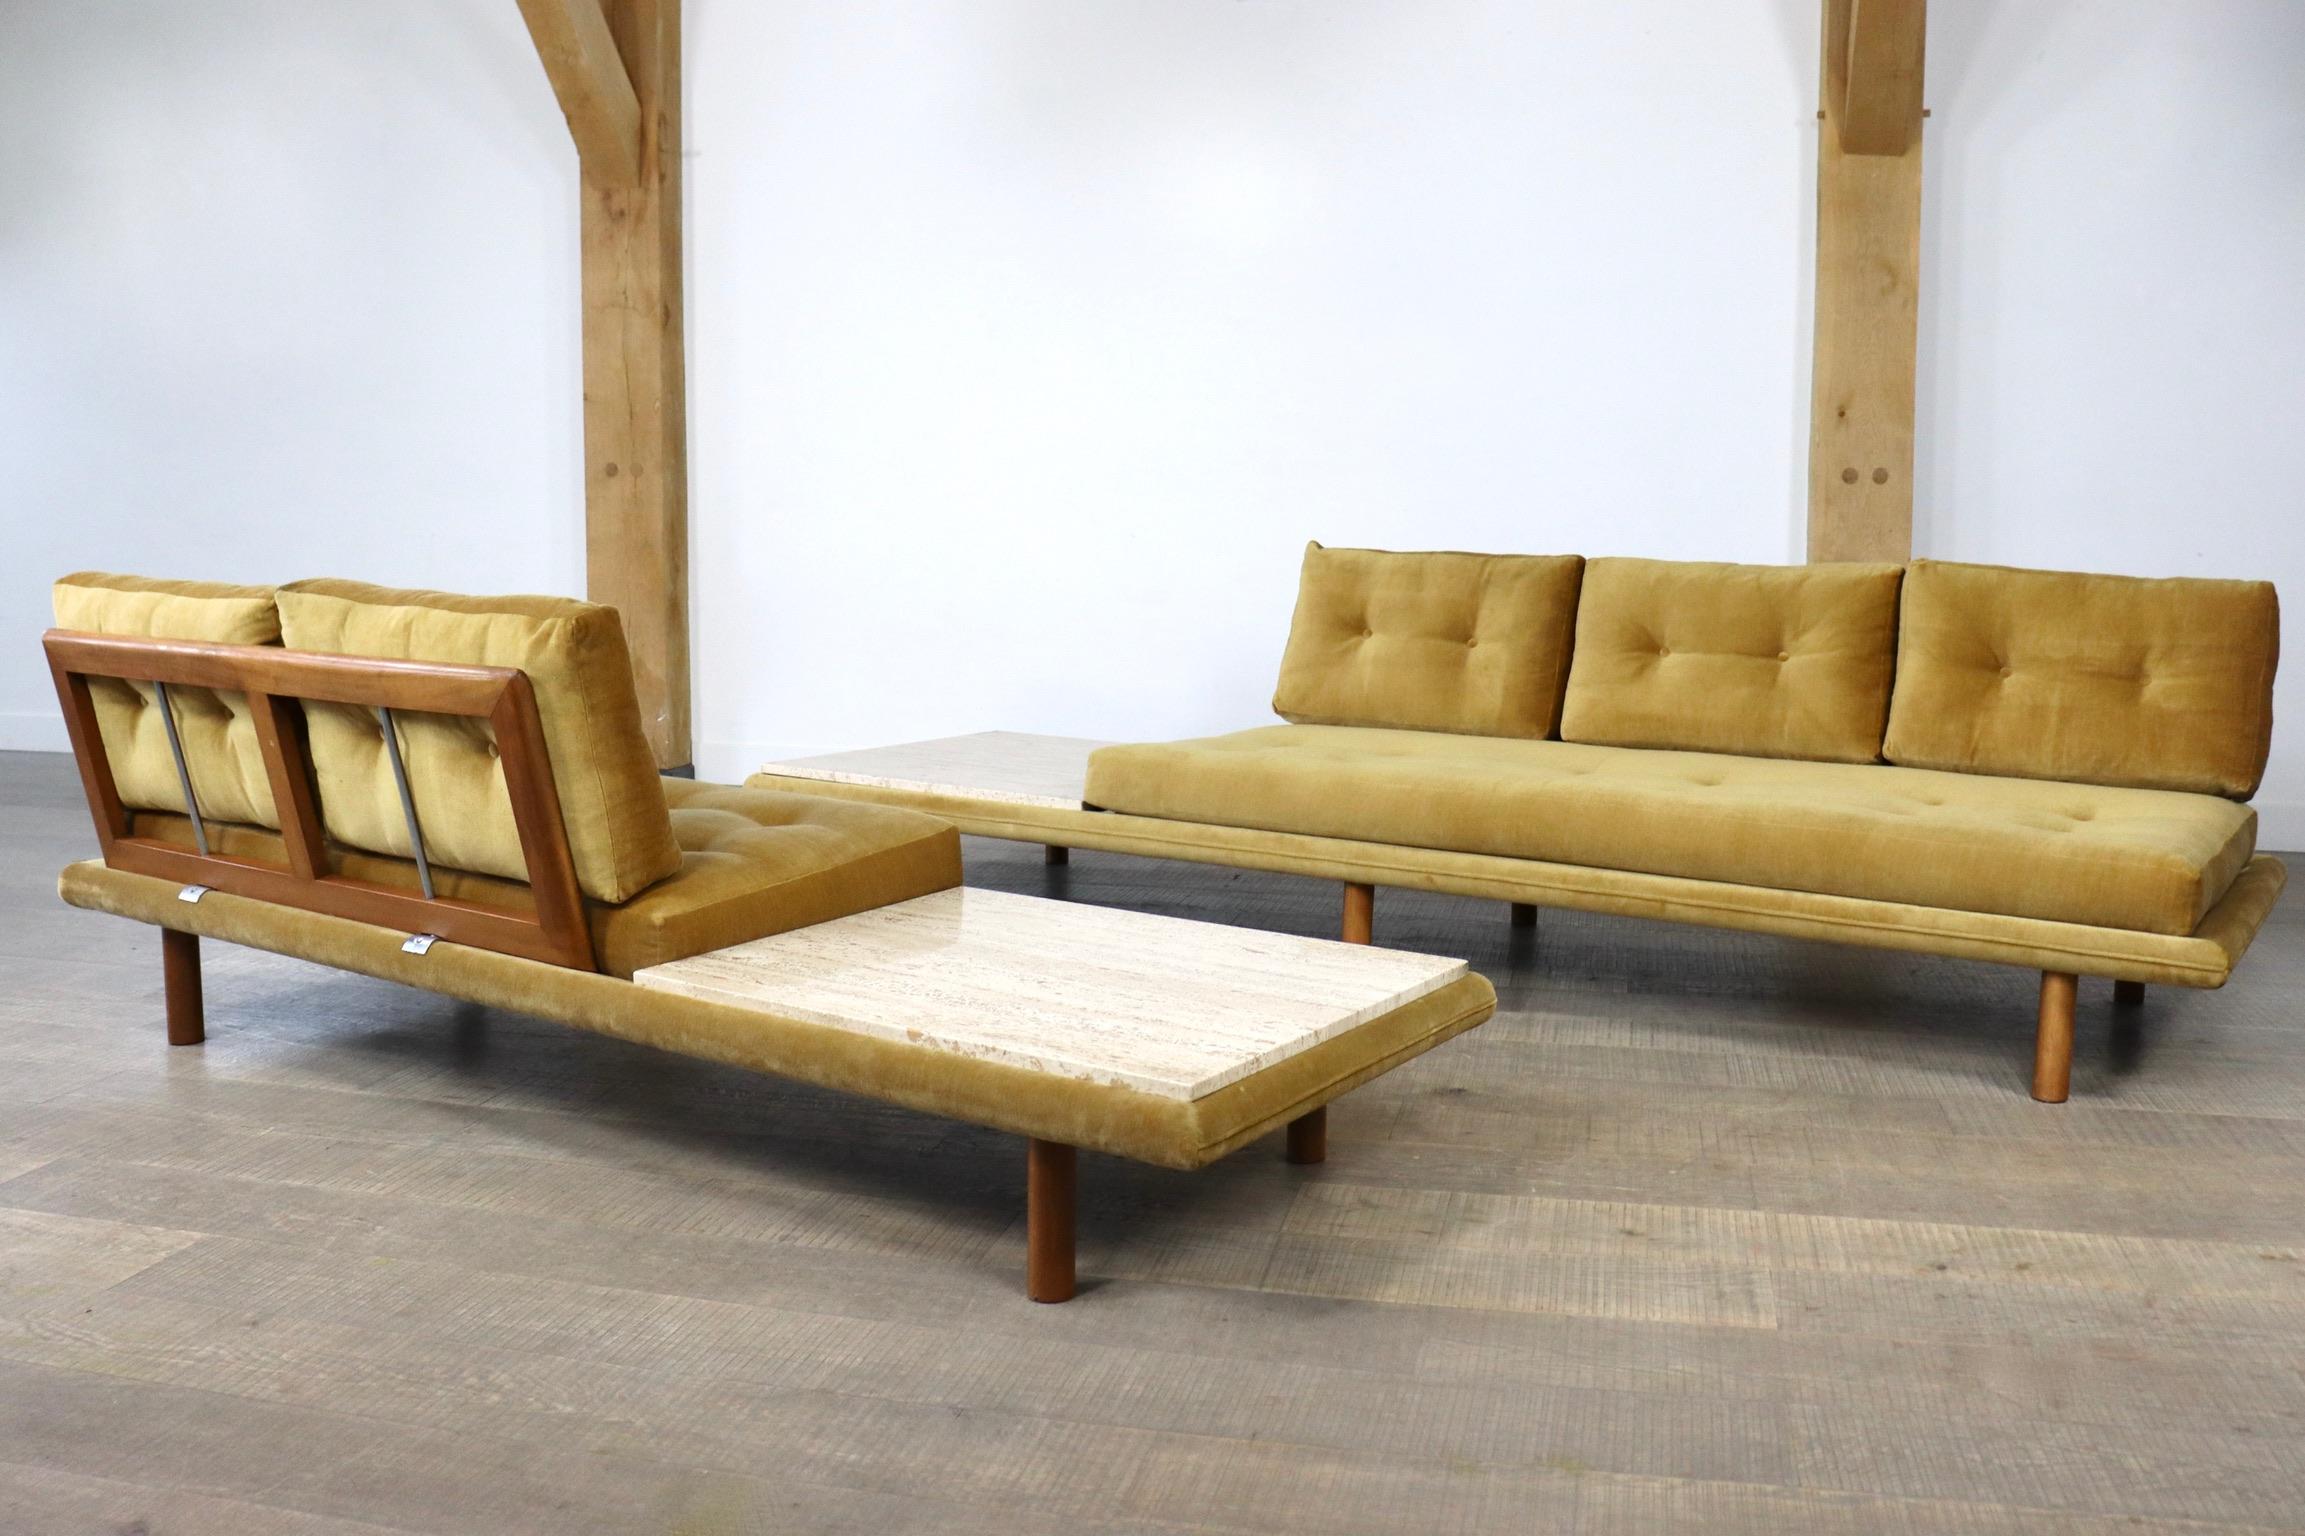 Paire de canapés/lits de jour design des années 1960 par Franz Köttgen pour Kill International, modèle 6603.

Cet ensemble vintage se compose d'un canapé 3 places et d'un canapé 2 places avec revêtement en velours d'origine de couleur jaune / vert